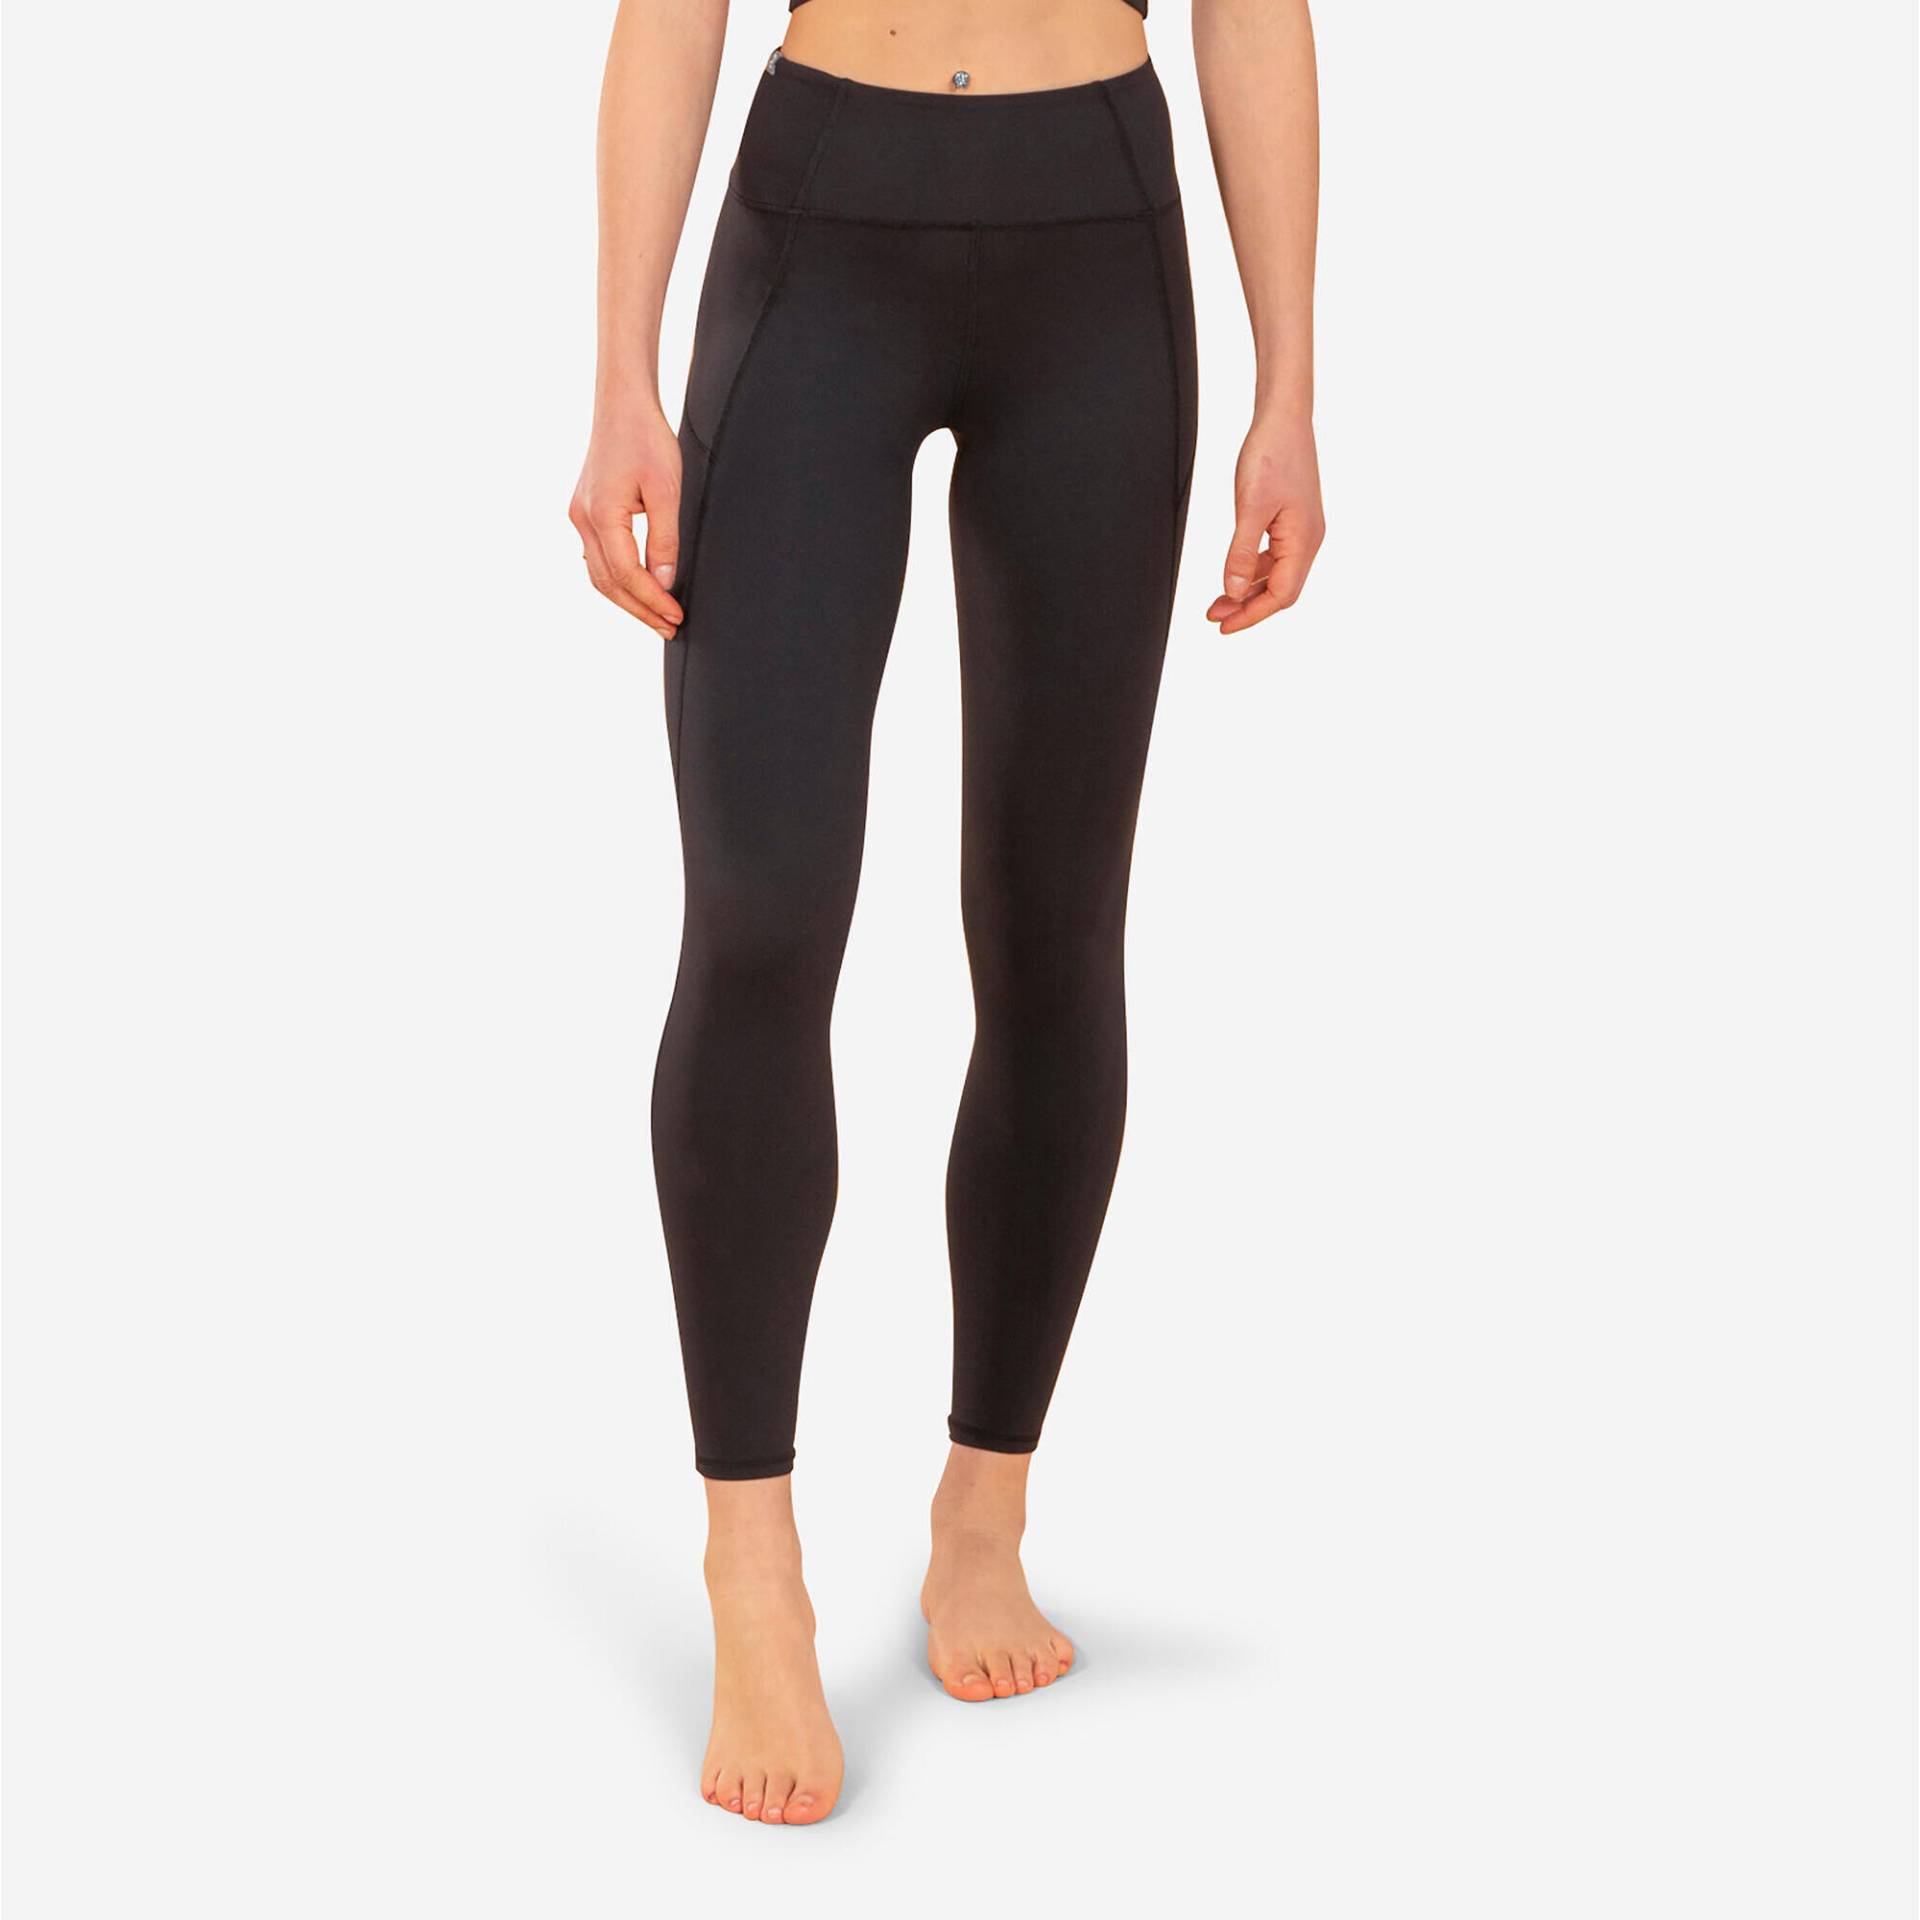 Leggings Yoga - Premium schwarz von KIMJALY